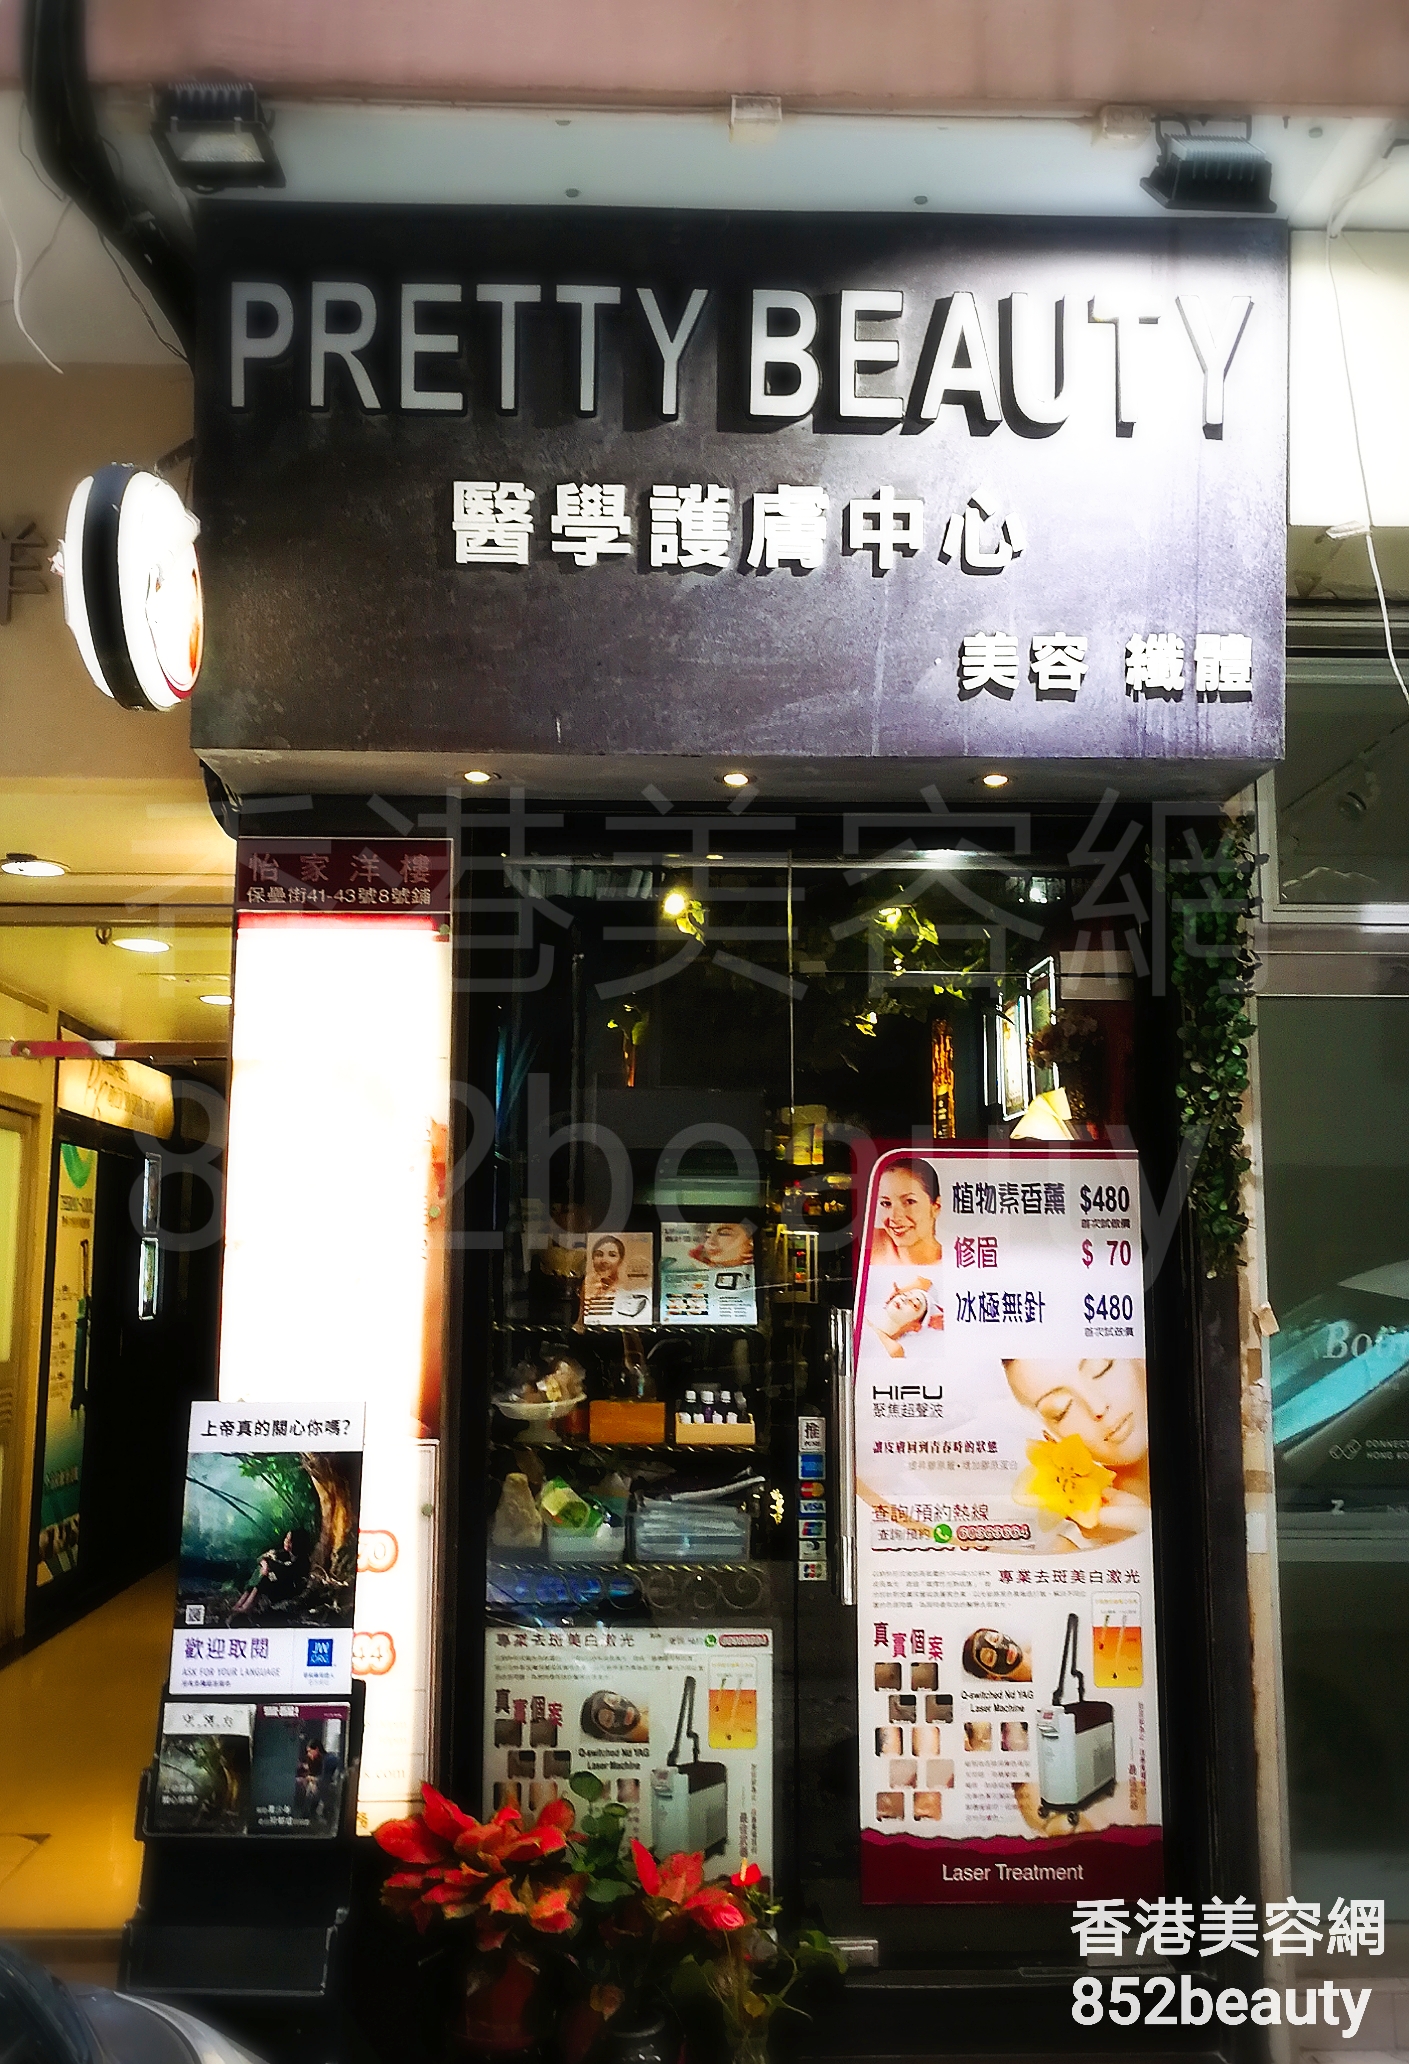 香港美容網 Hong Kong Beauty Salon 美容院 / 美容師: Pretty Beauty 醫學護膚中心 (北角店)